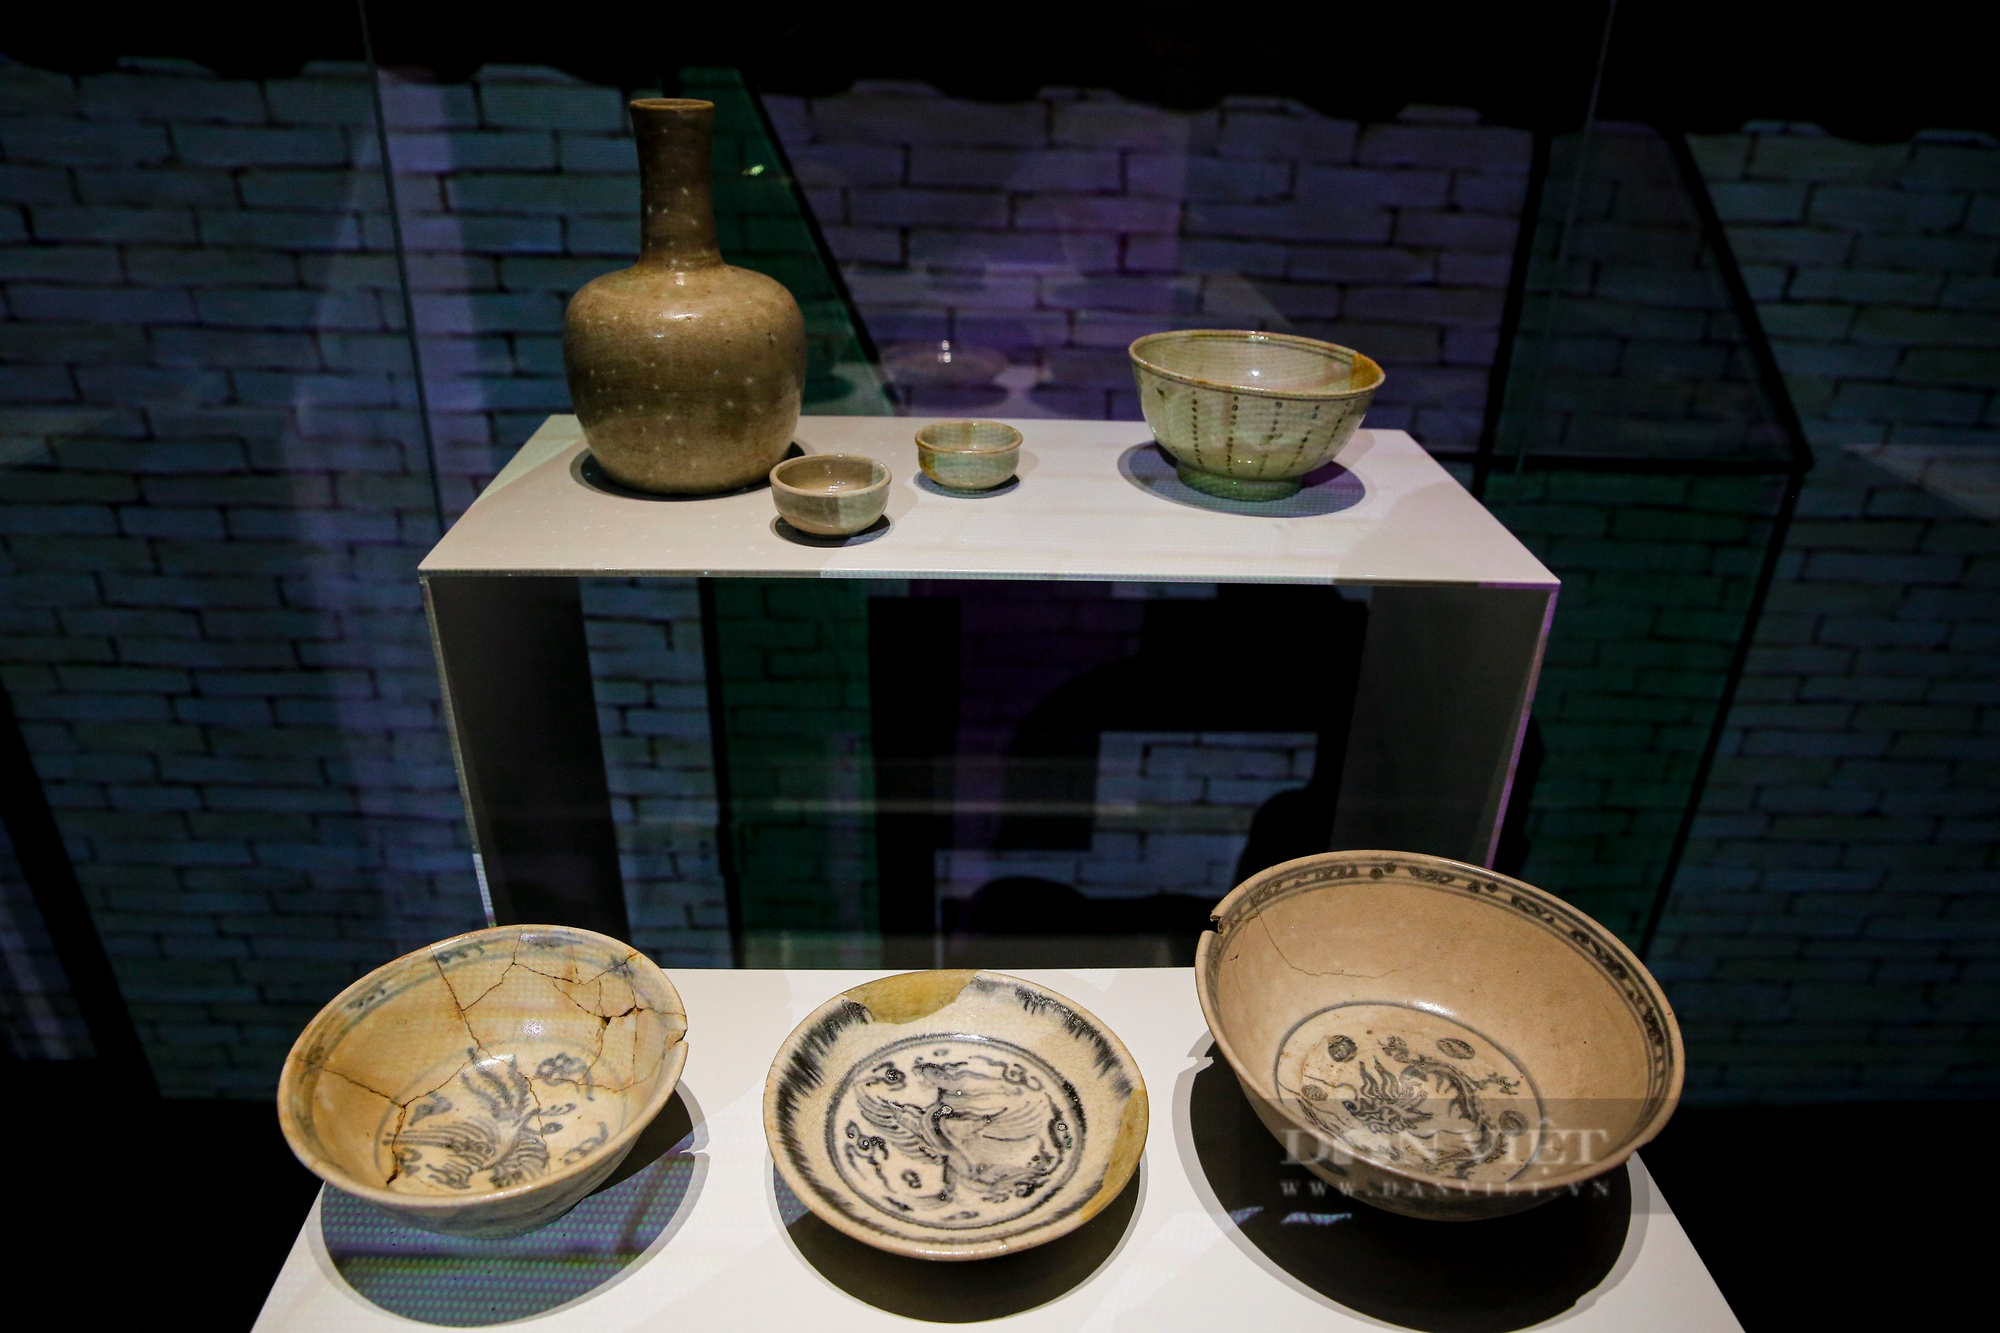 Chiêm ngưỡng những “Báu vật Hoàng cung Thăng Long” vô giá được trưng bày tại Hà Nội - Ảnh 3.